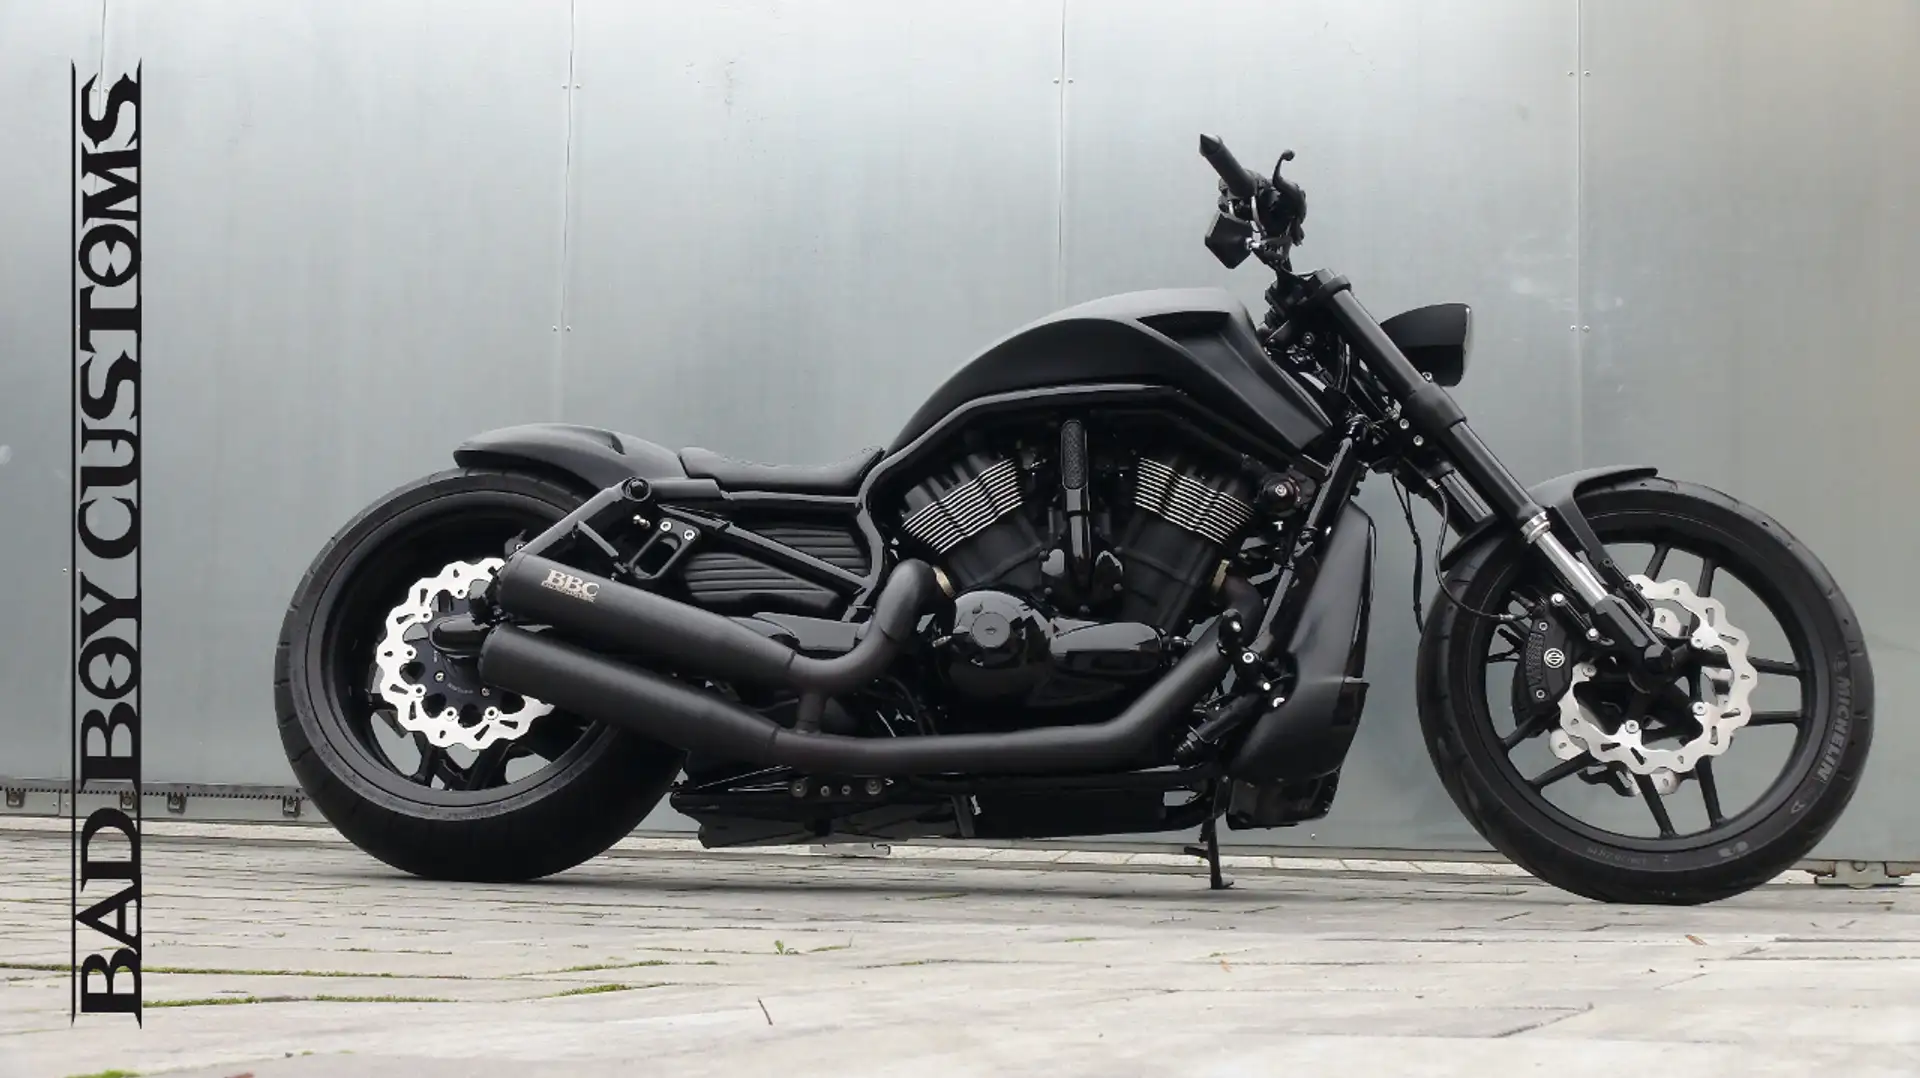 Harley-Davidson Night Rod Chopper/Cruiser in Schwarz gebraucht in Wiesbaden  für € 40.400,-